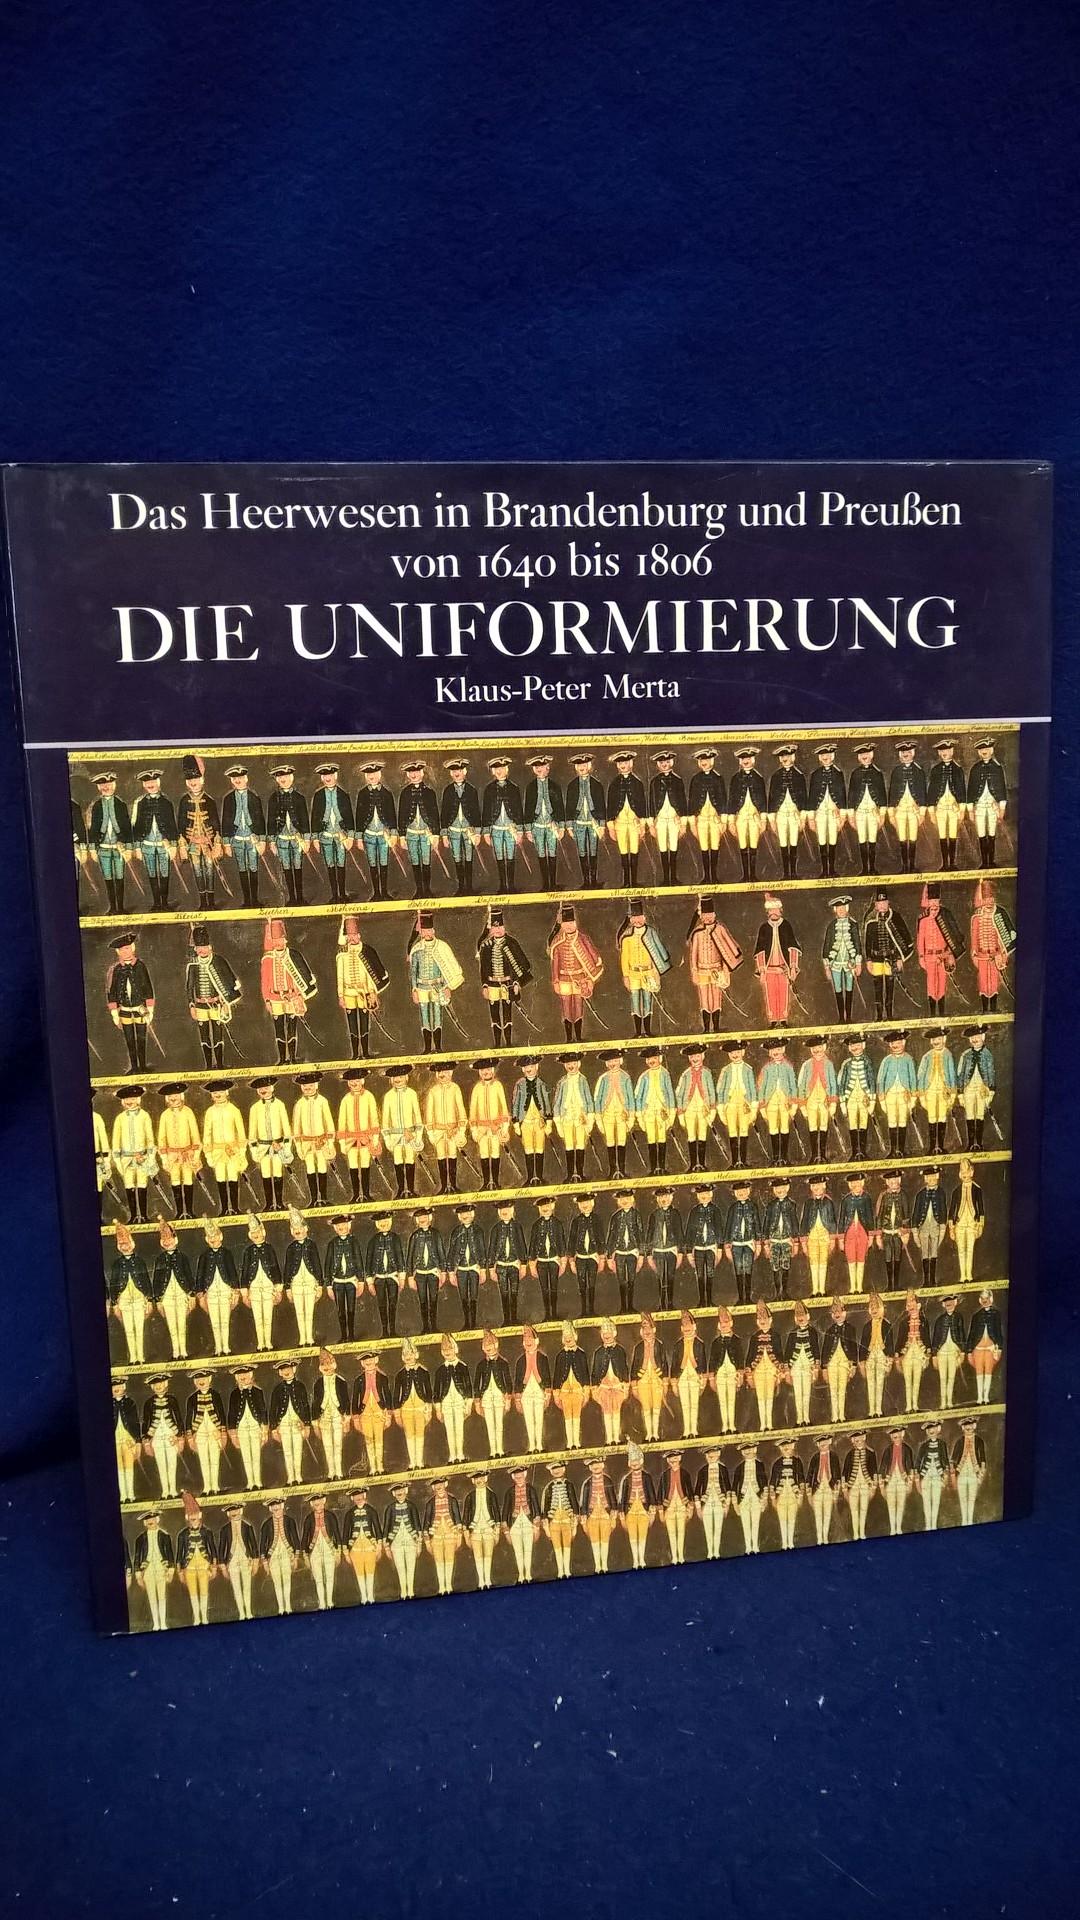 Das Heerwesen in Brandenburg und Preußen von 1640-1806. Die Uniformierung